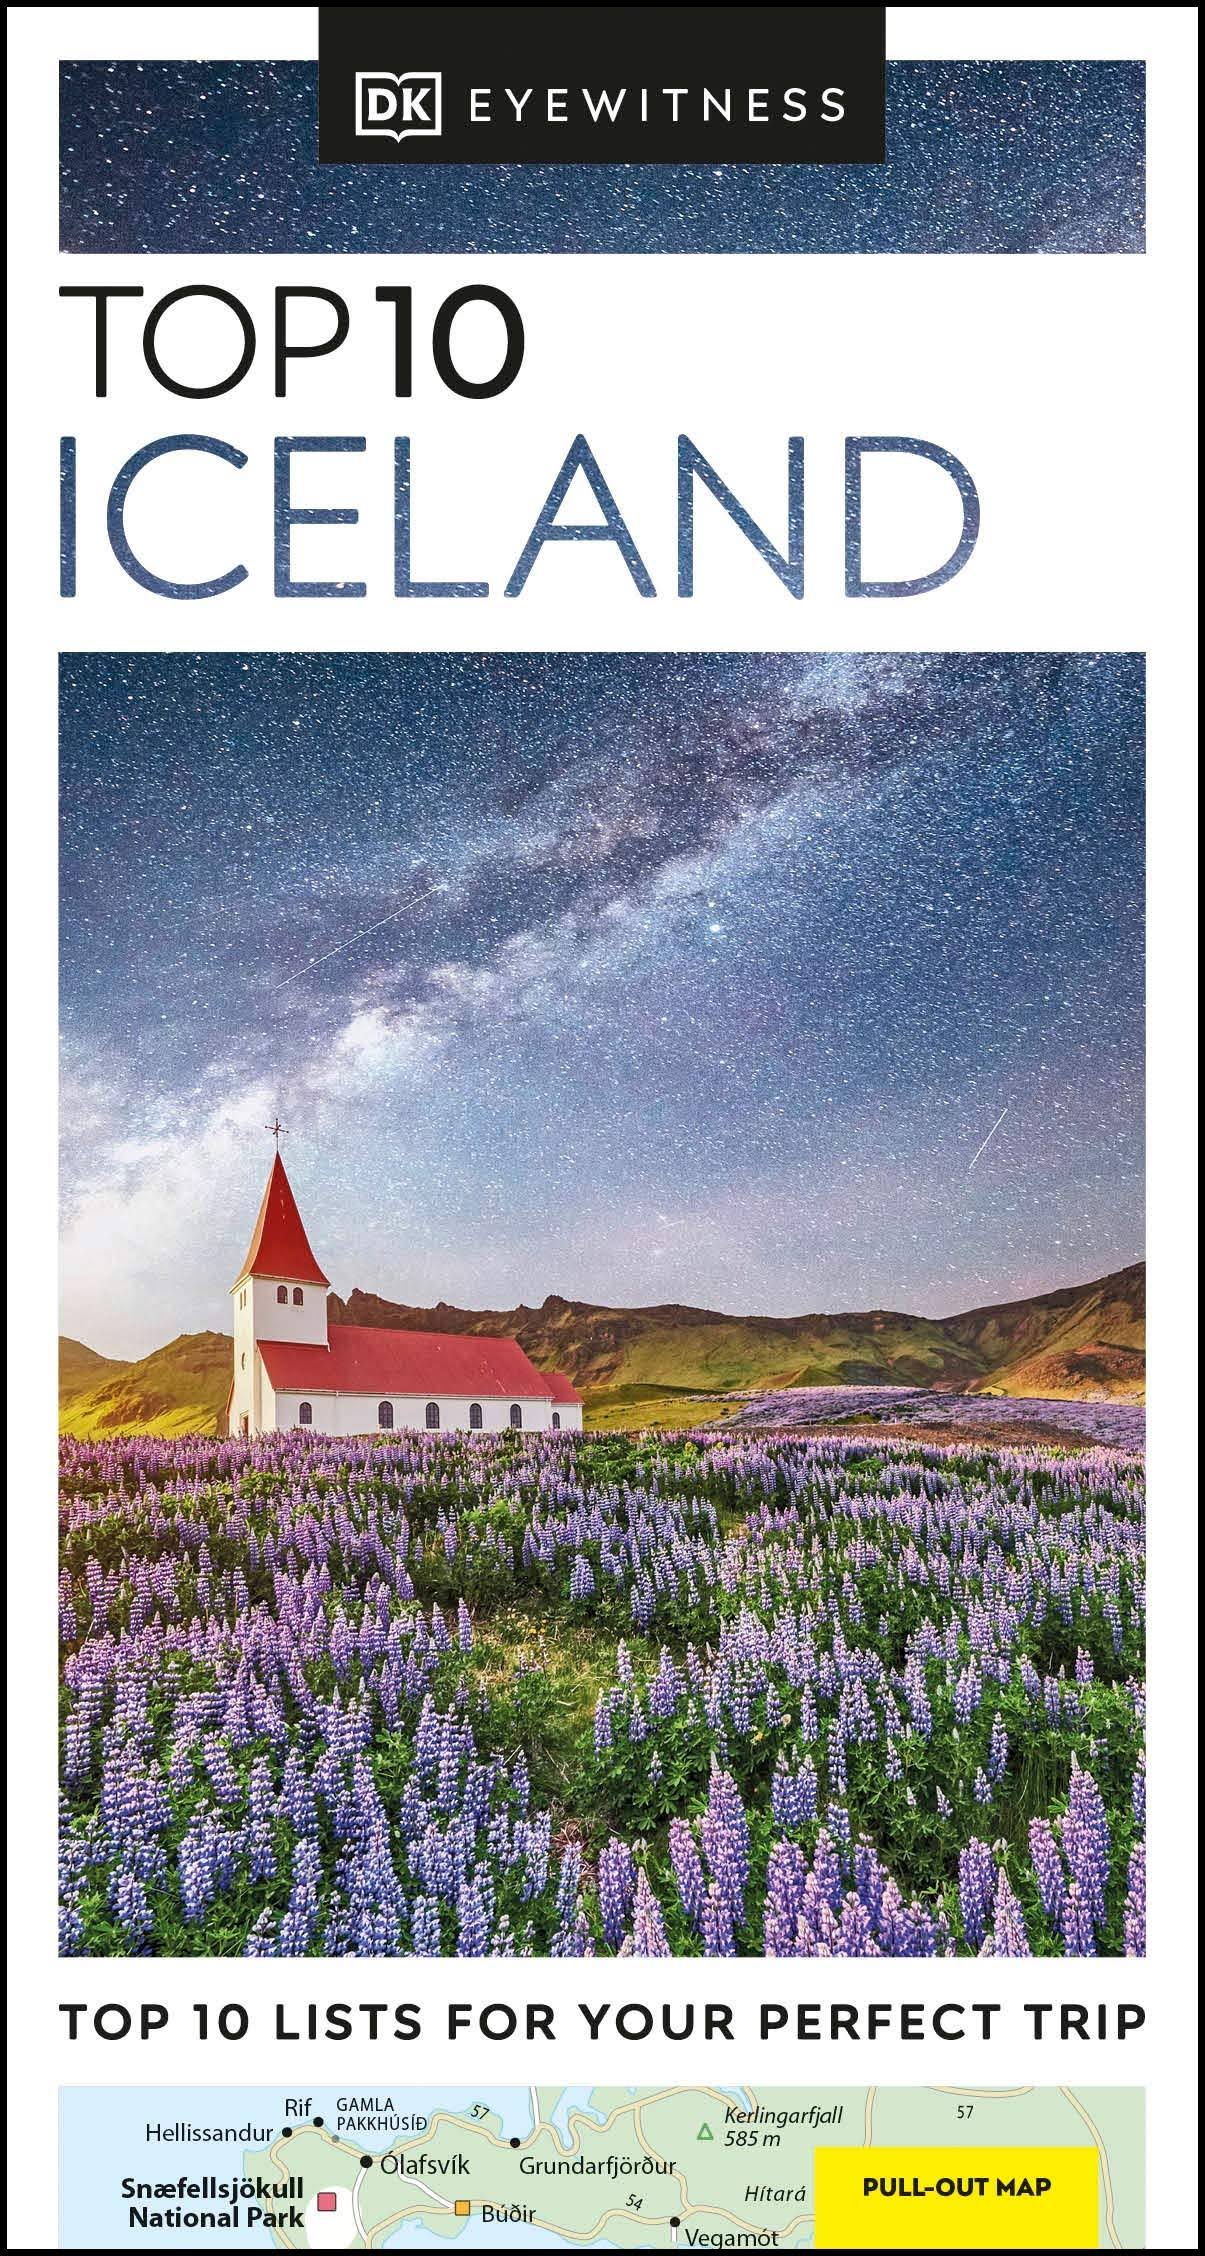 DK Eyewitness Top 10 Iceland [Book]